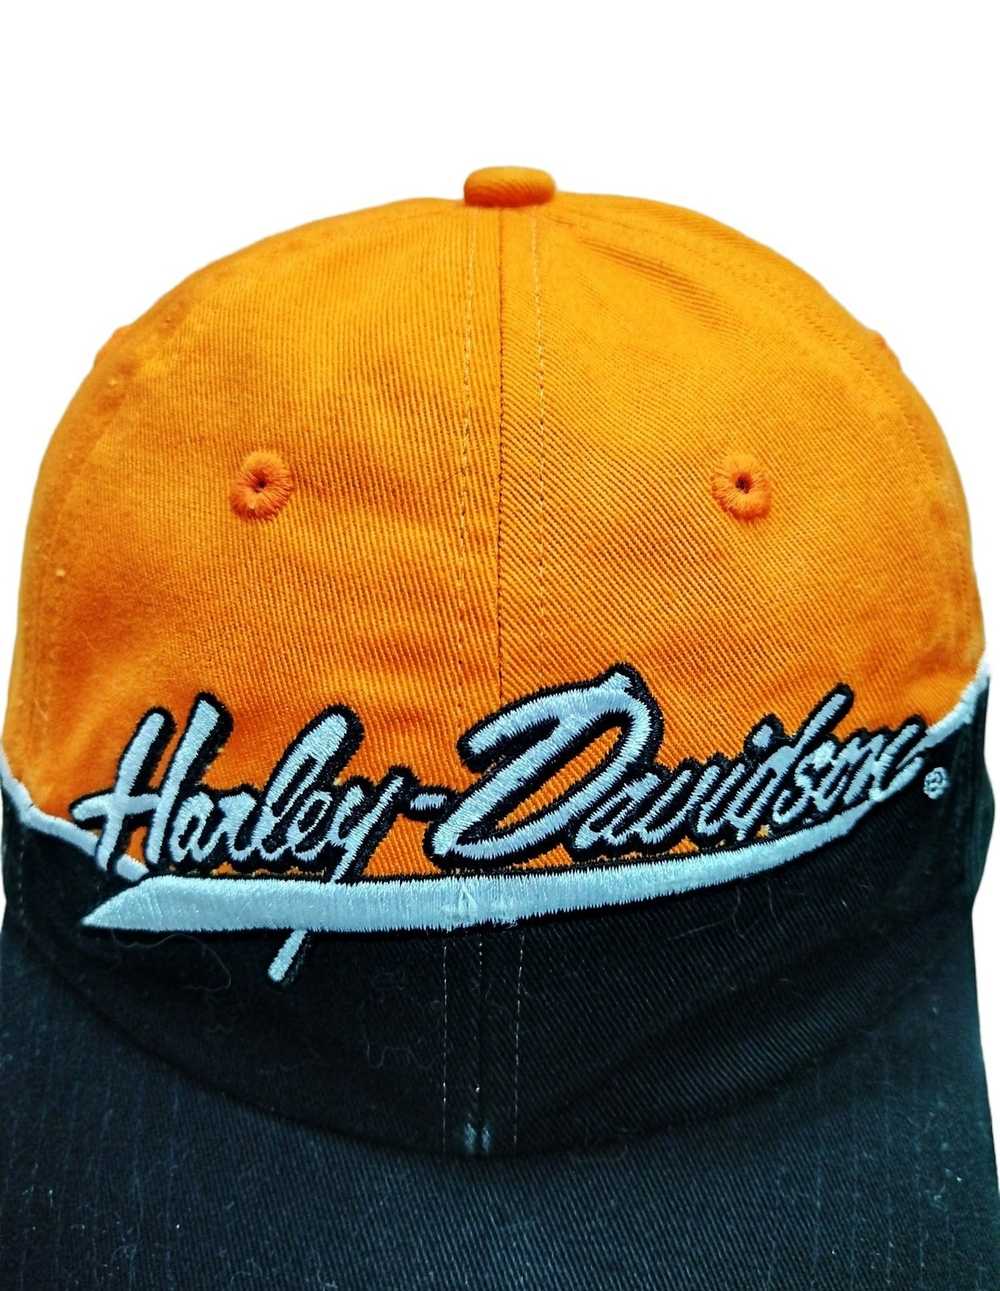 Harley Davidson Vintage Harley Davidson Cap - image 2